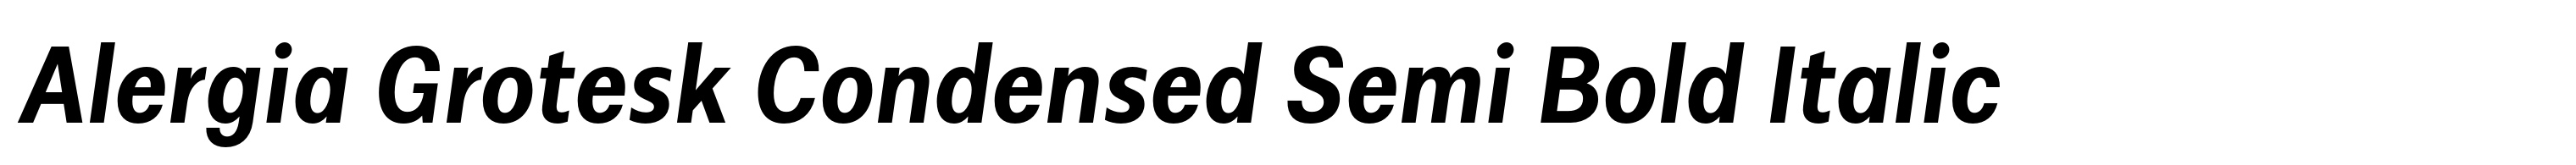 Alergia Grotesk Condensed Semi Bold Italic